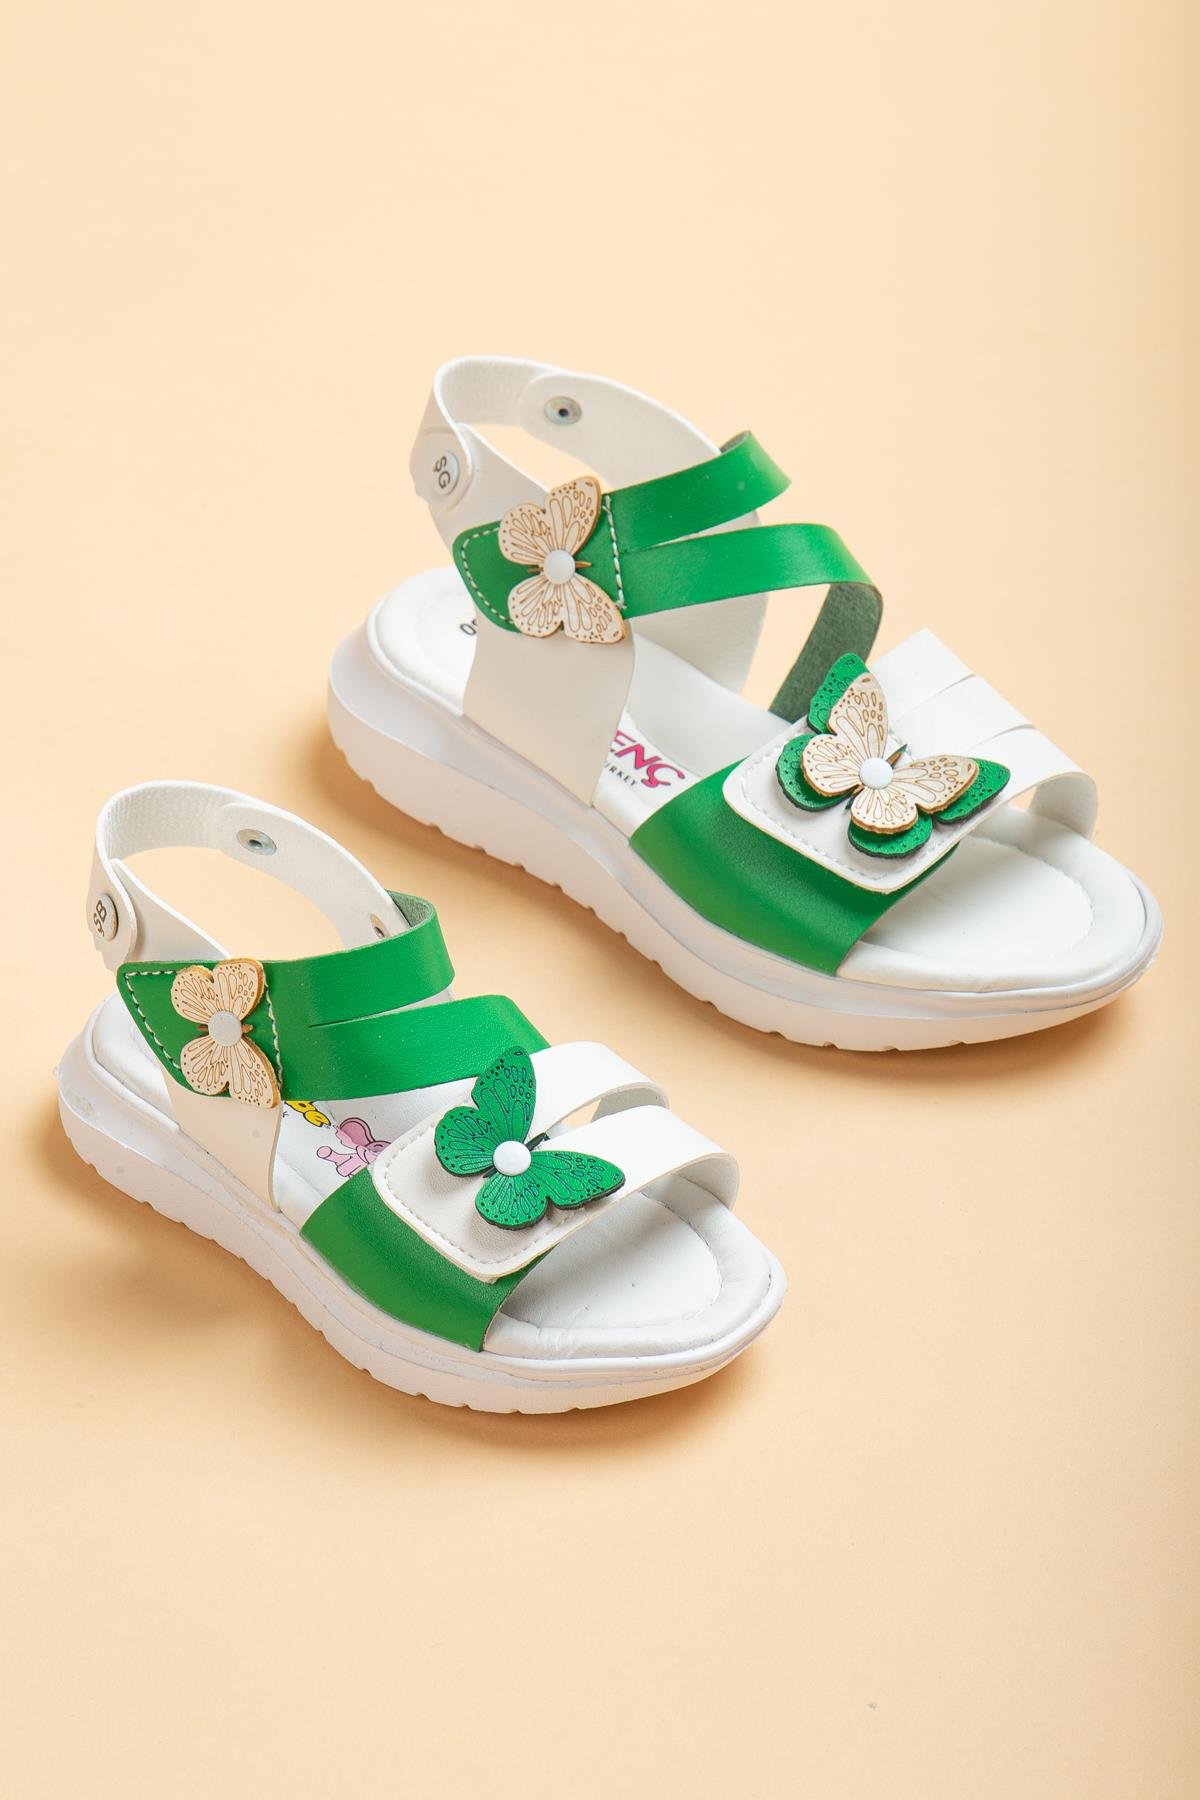 Şirinbebe Şiringenç Kelebek Model Yeşil Kız Bebek Çocuk Sandalet